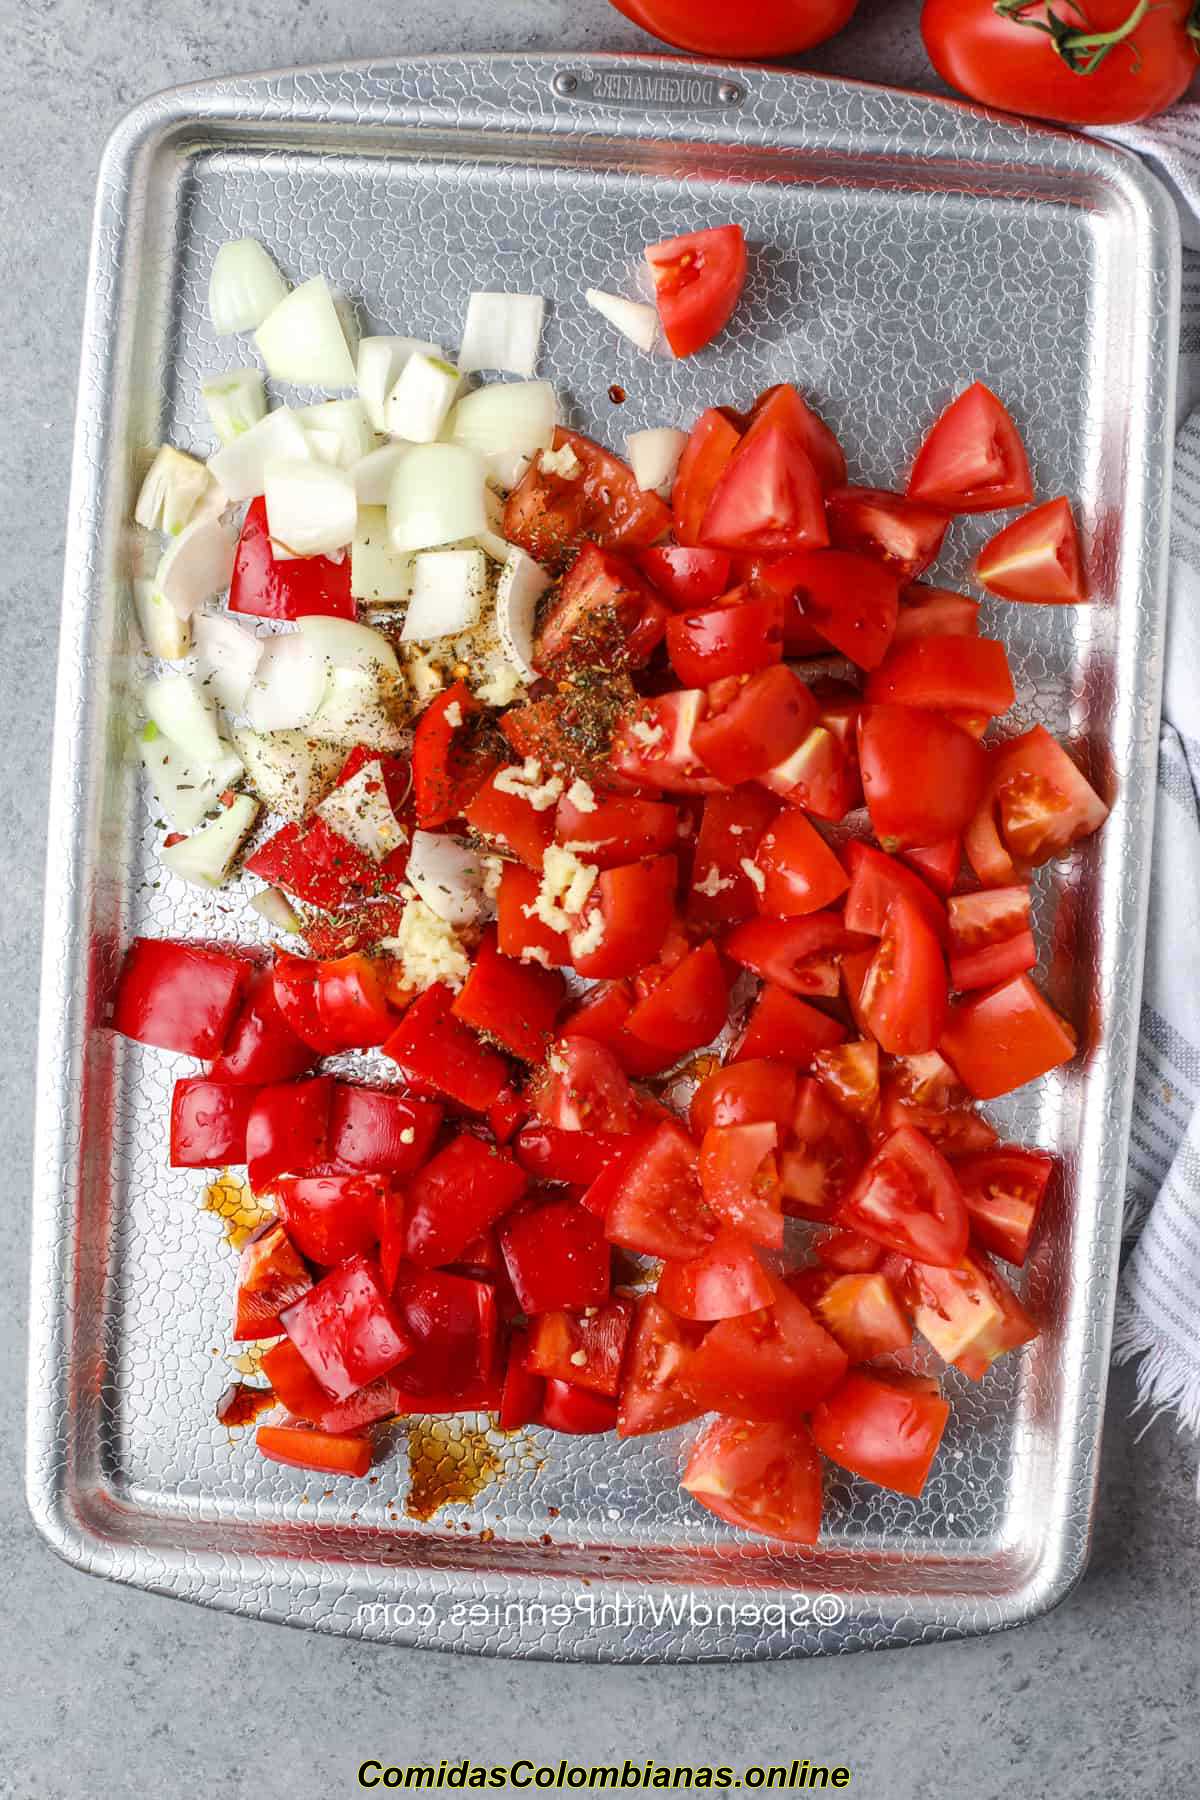 トマトと玉ねぎに調味料を加えてキルバサスープを作る